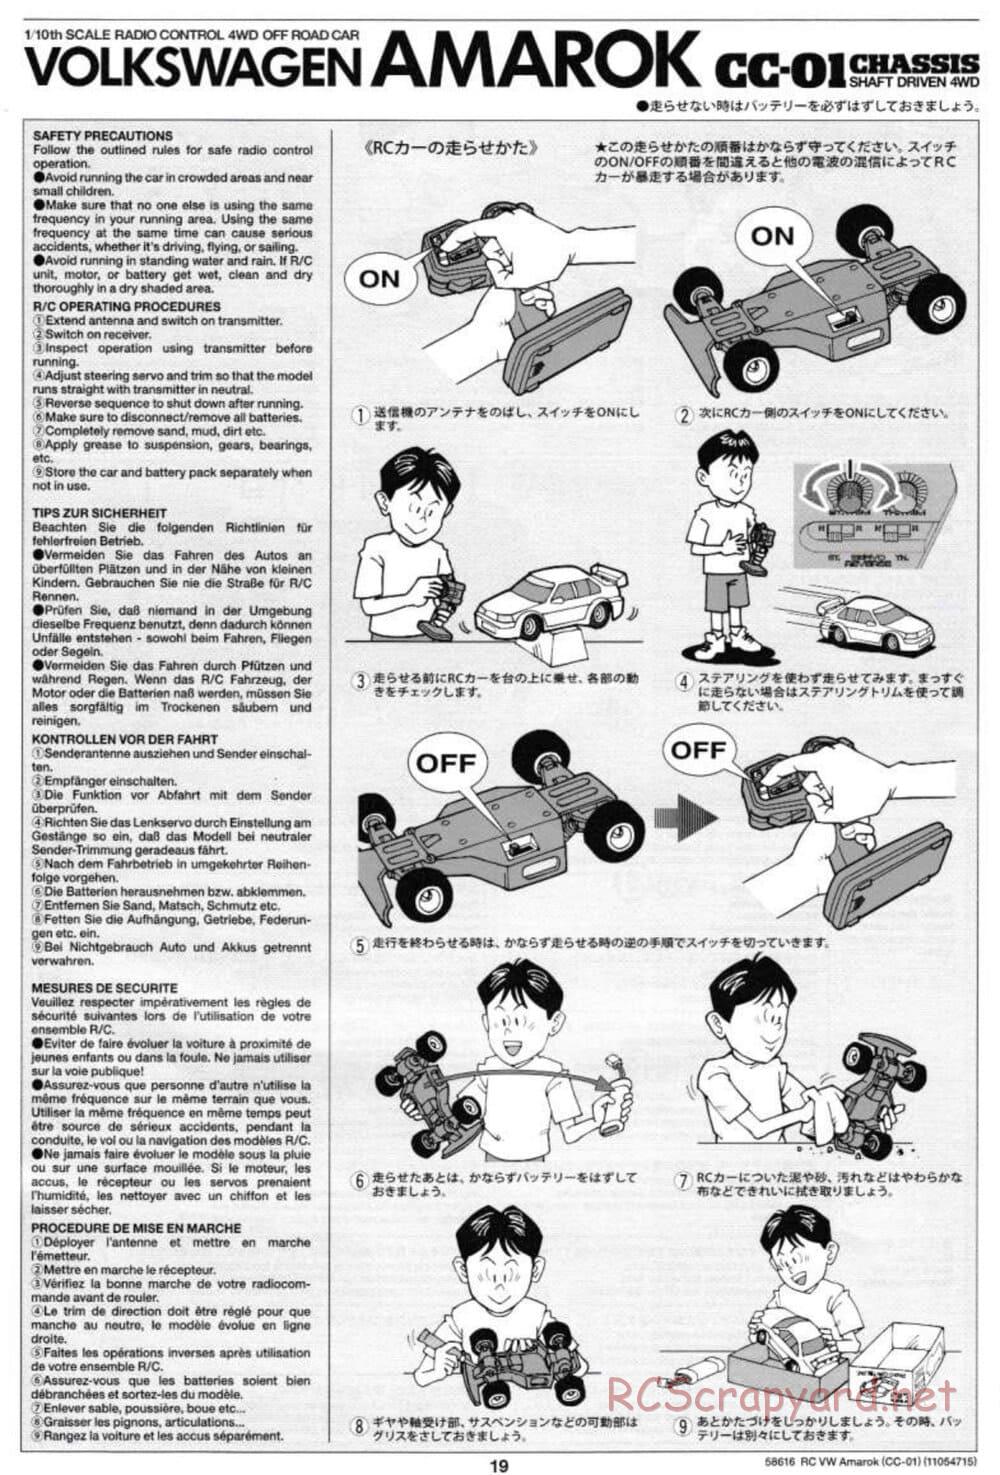 Tamiya - Volkswagen Amarok - CC-01 Chassis - Manual - Page 19